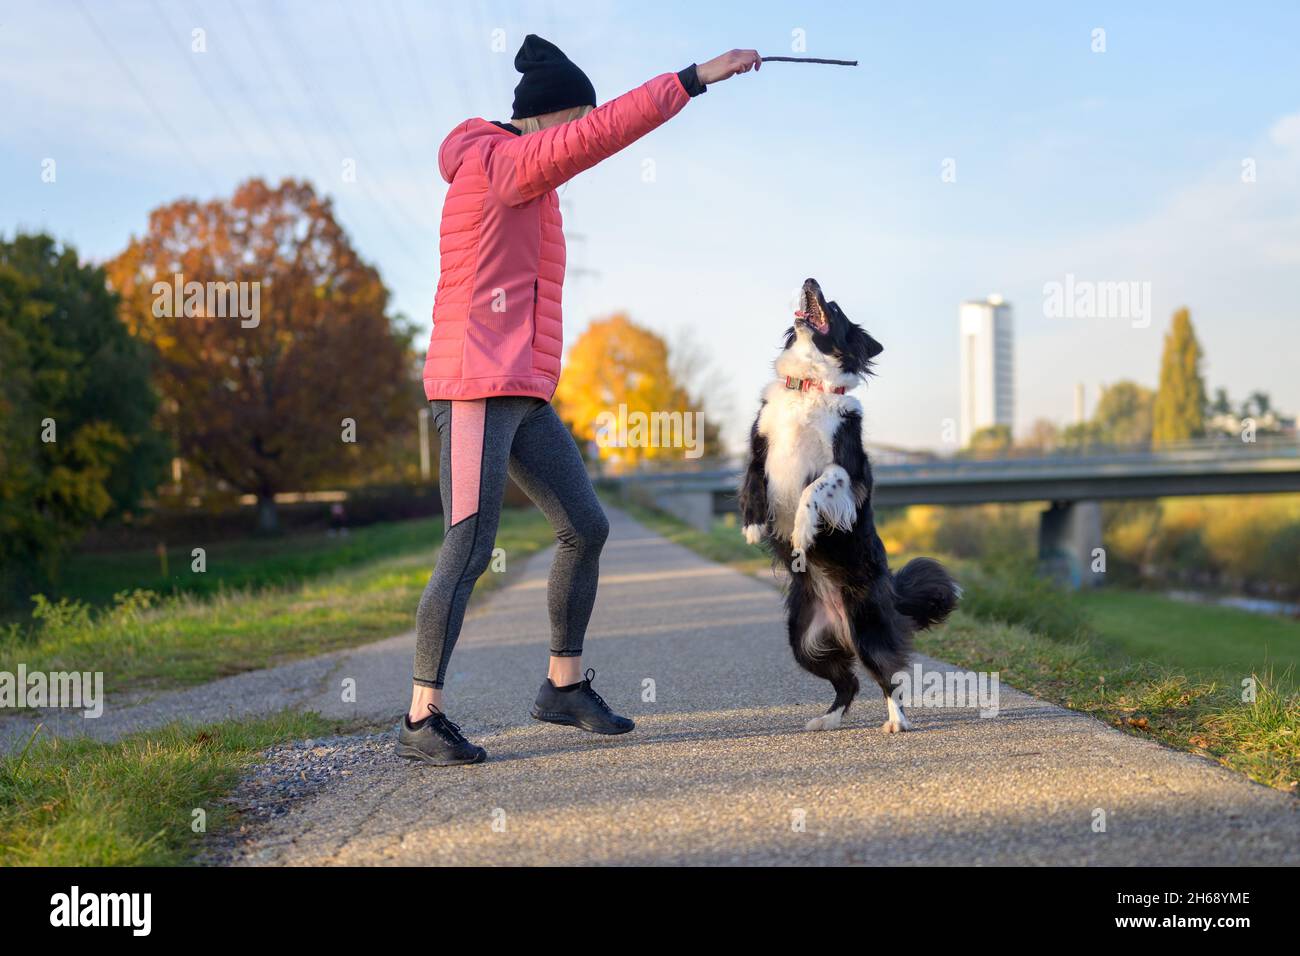 Frau neckt einen Border Collie mit einem erhobenen Stock in einem Spiel von fetch im Abendlicht auf einem ländlichen Fußweg, während der Hund in der Luft springt Stockfoto